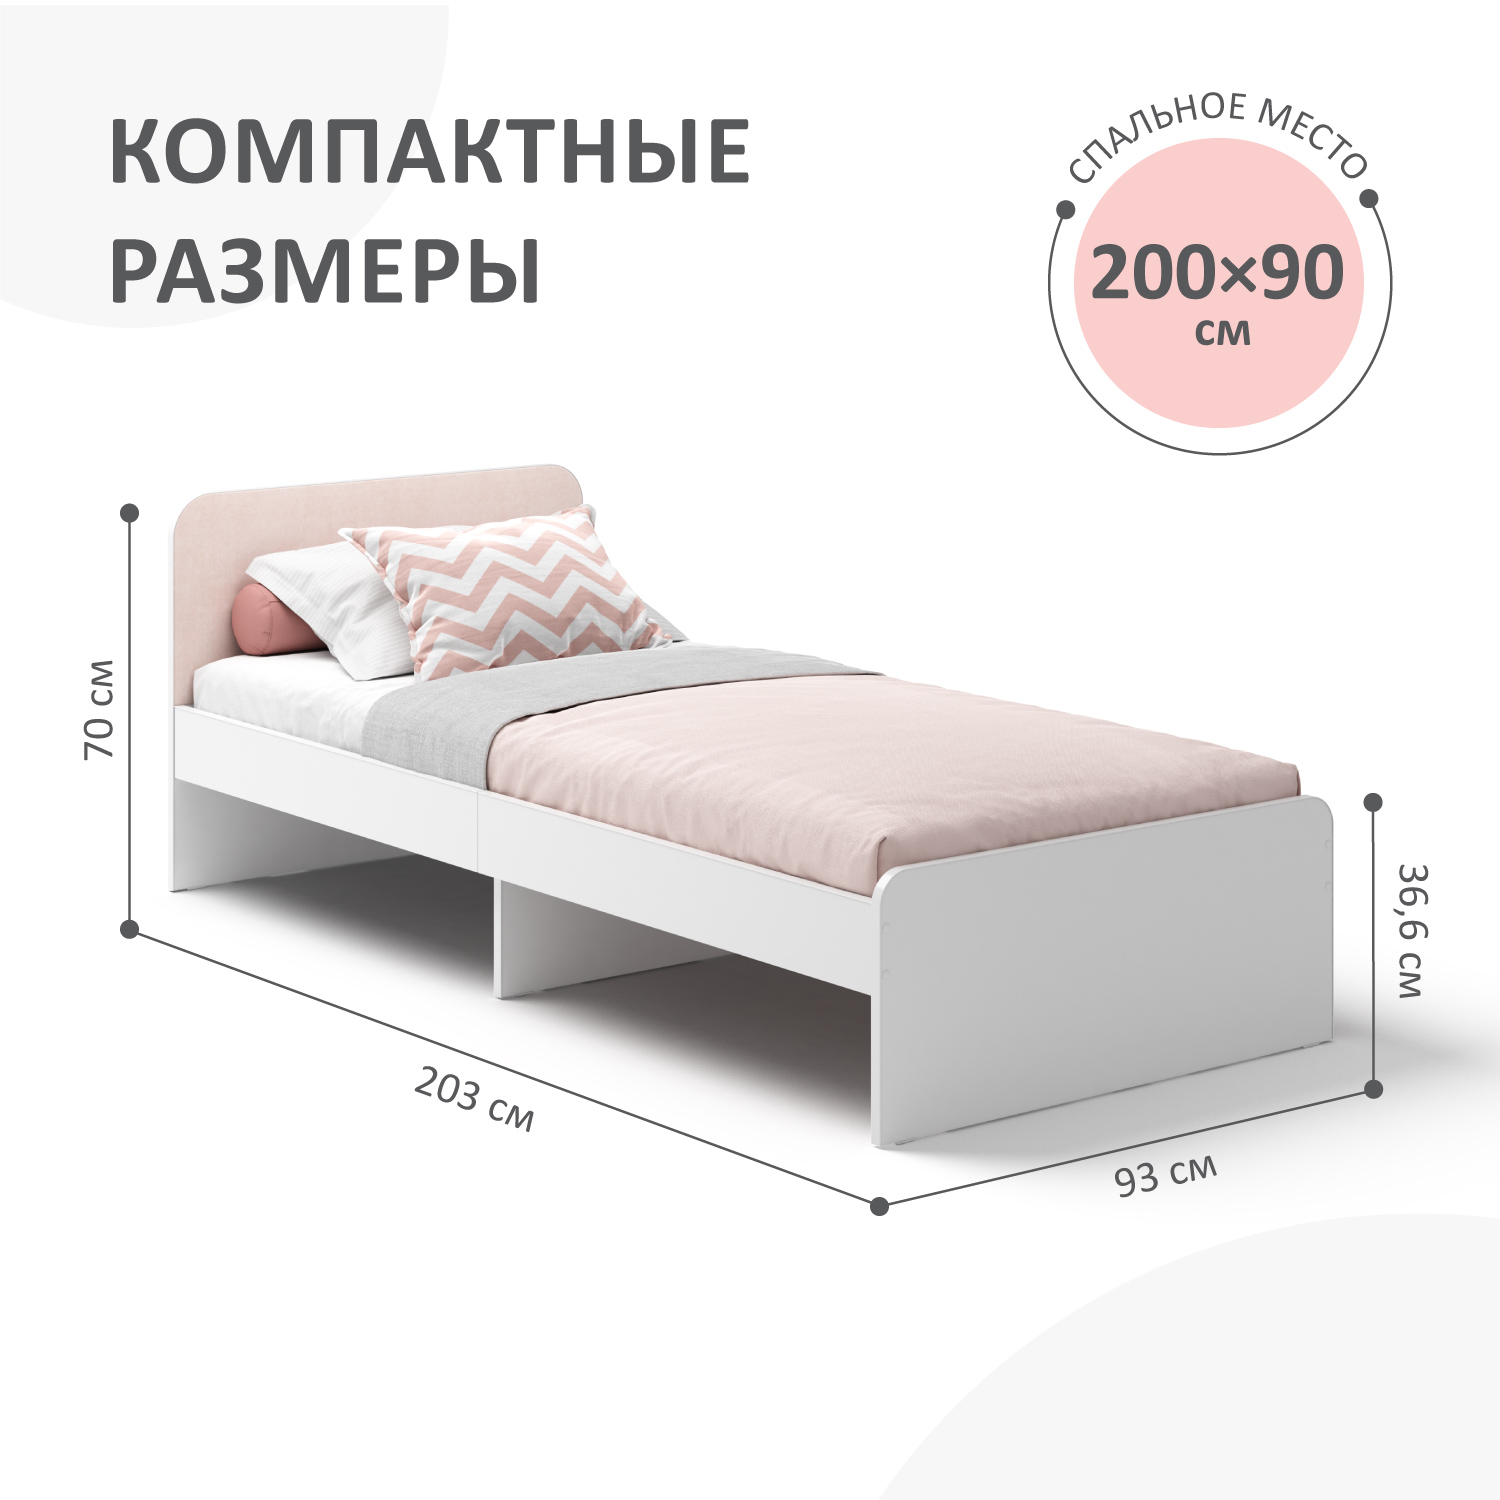 Кровать односпальная Хедвиг ROMACK 200х90 см с ортопедическим основанием розовый велюр - фото 5